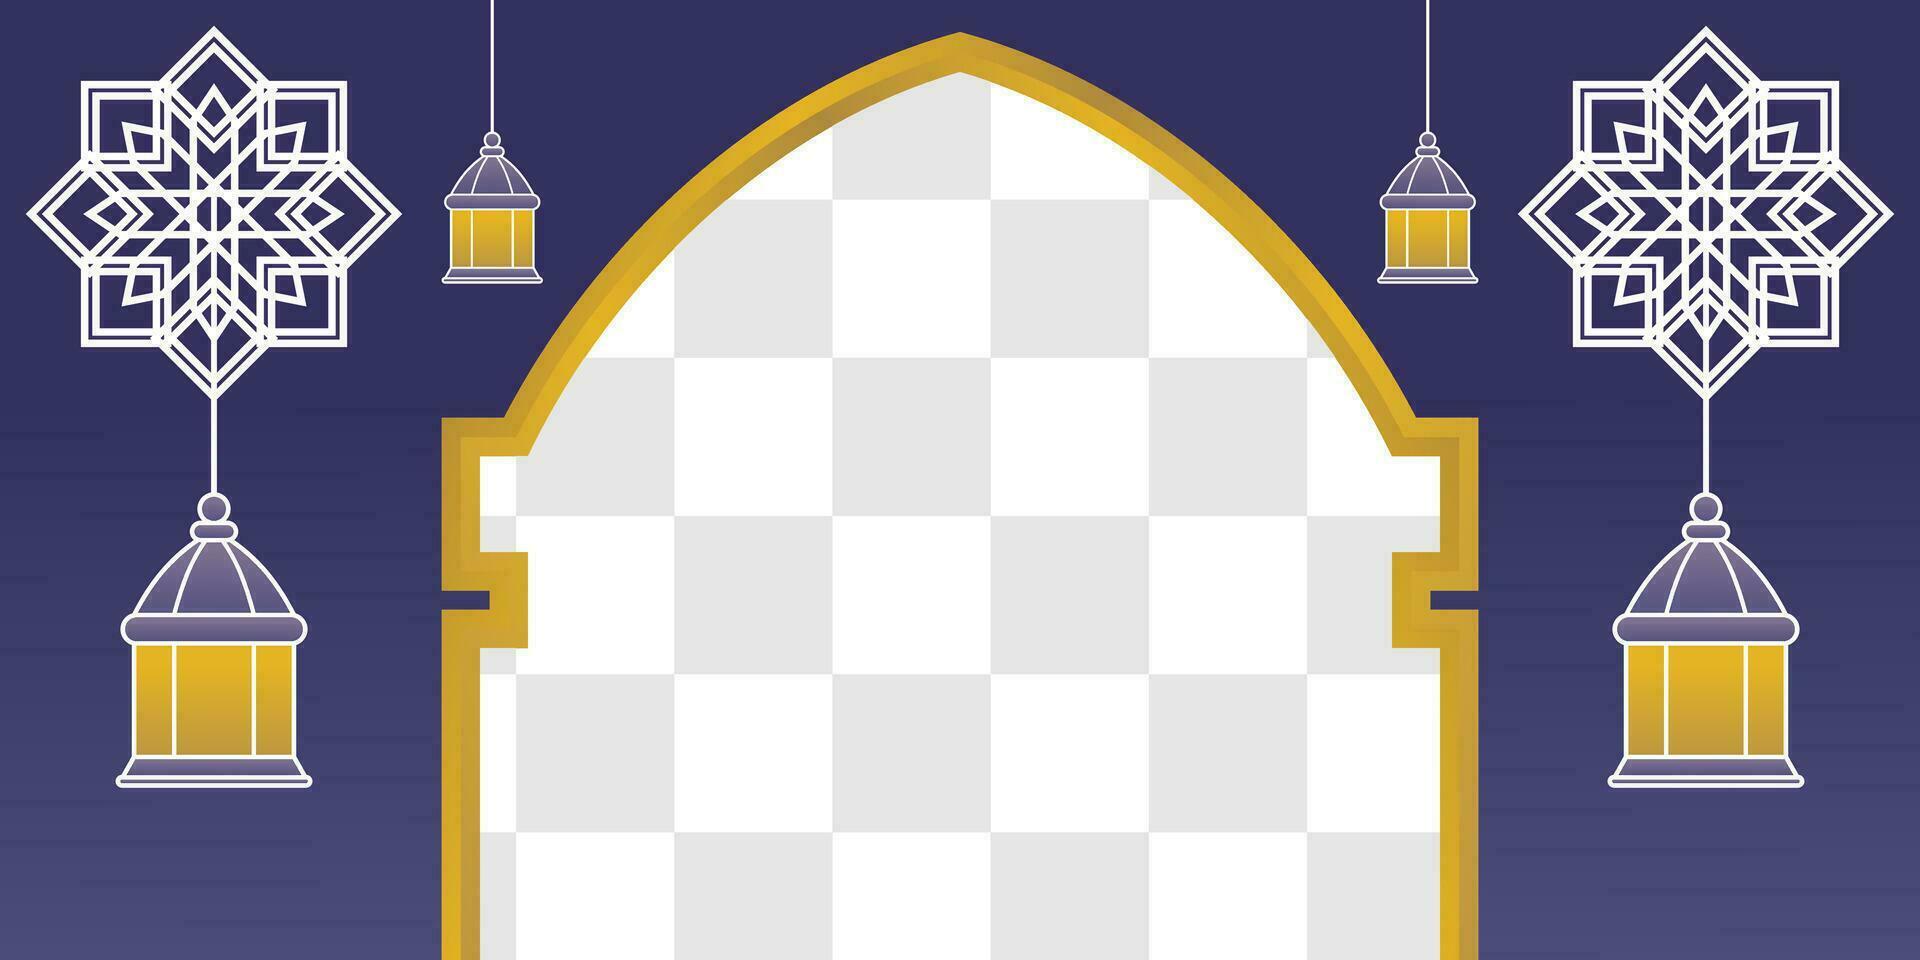 bleu islamique arrière-plan, avec lanterne ornements, mandala et gratuit copie espace zone. vecteur modèle pour bannière, salutation carte pour islamique vacances, eid al fitr, Ramadan, eid al-adha